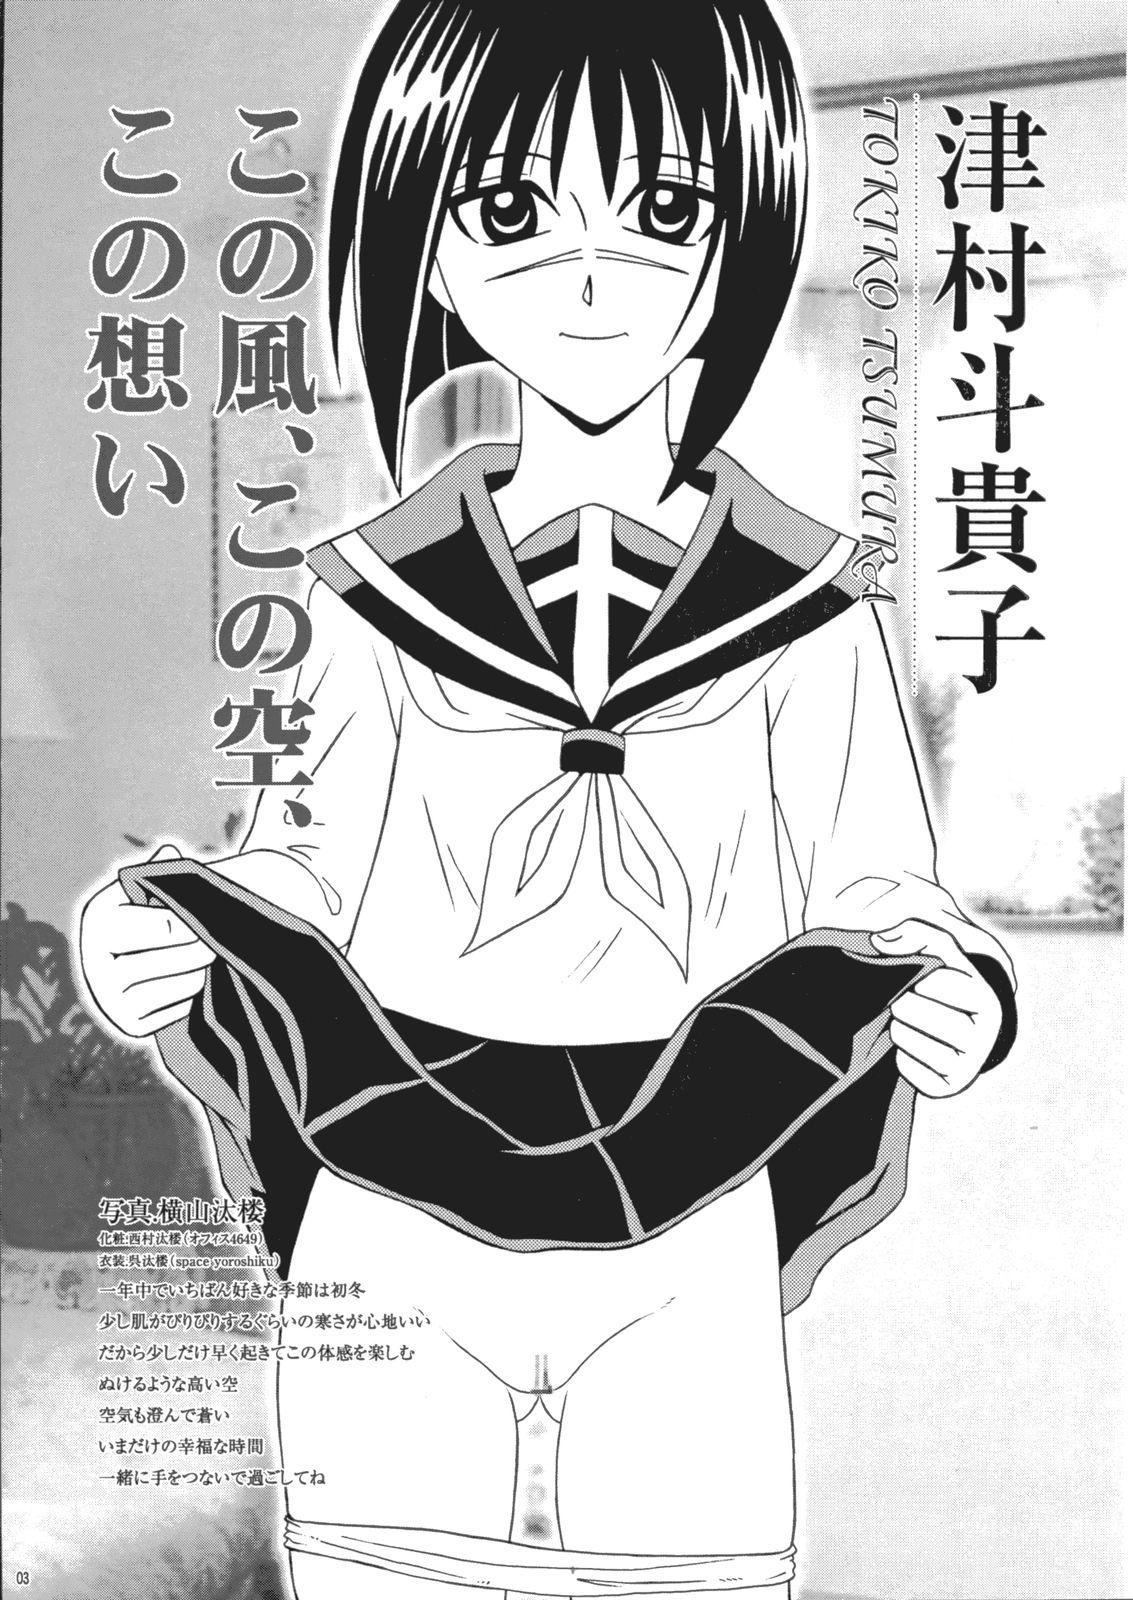 Housewife Saku-chan Kurabu Vol.03 - Naruto One piece Ichigo 100 Is Hikaru no go Women Sucking Dicks - Page 2